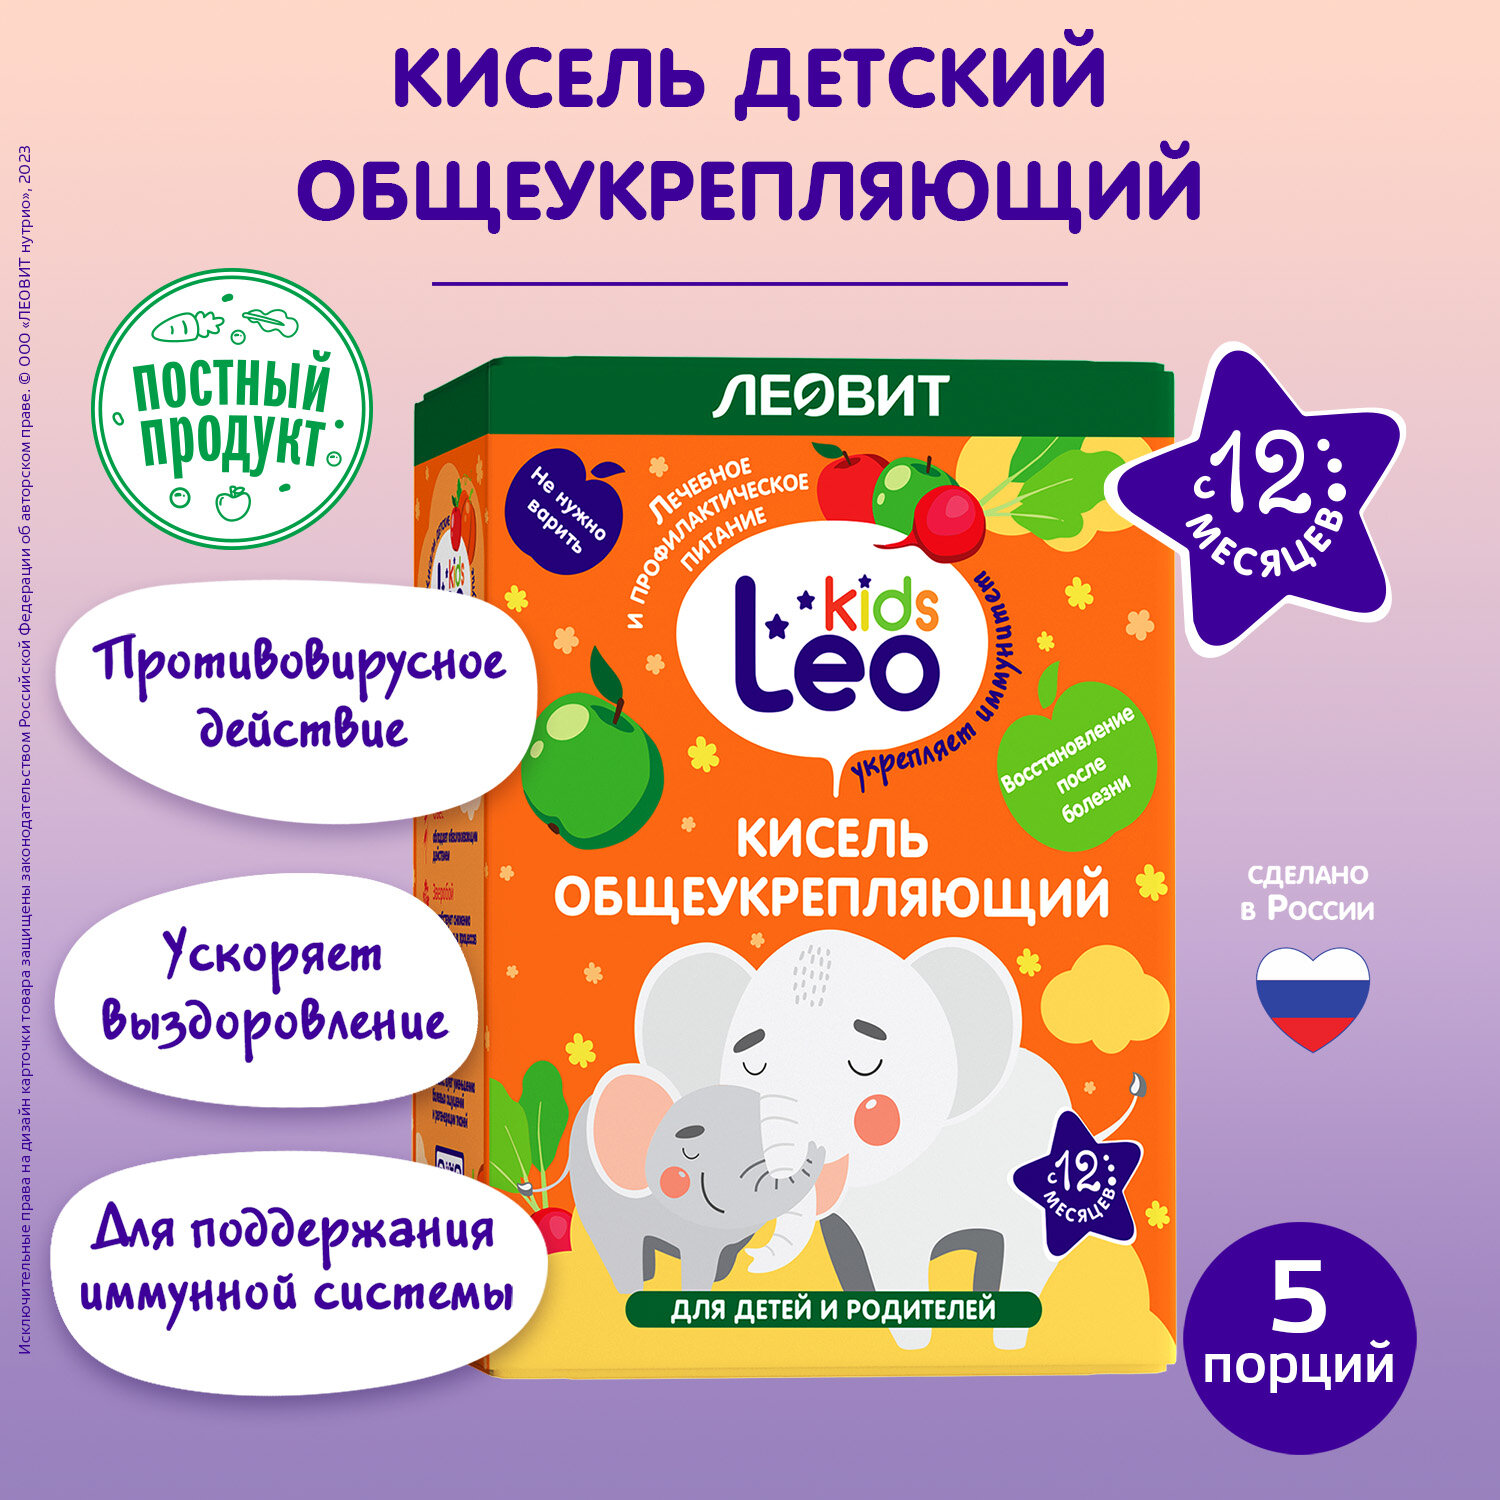 Кисель общеукрепляющий для детей LeoKids от леовит. 5 пакетов по 12 г. Упаковка 60 г